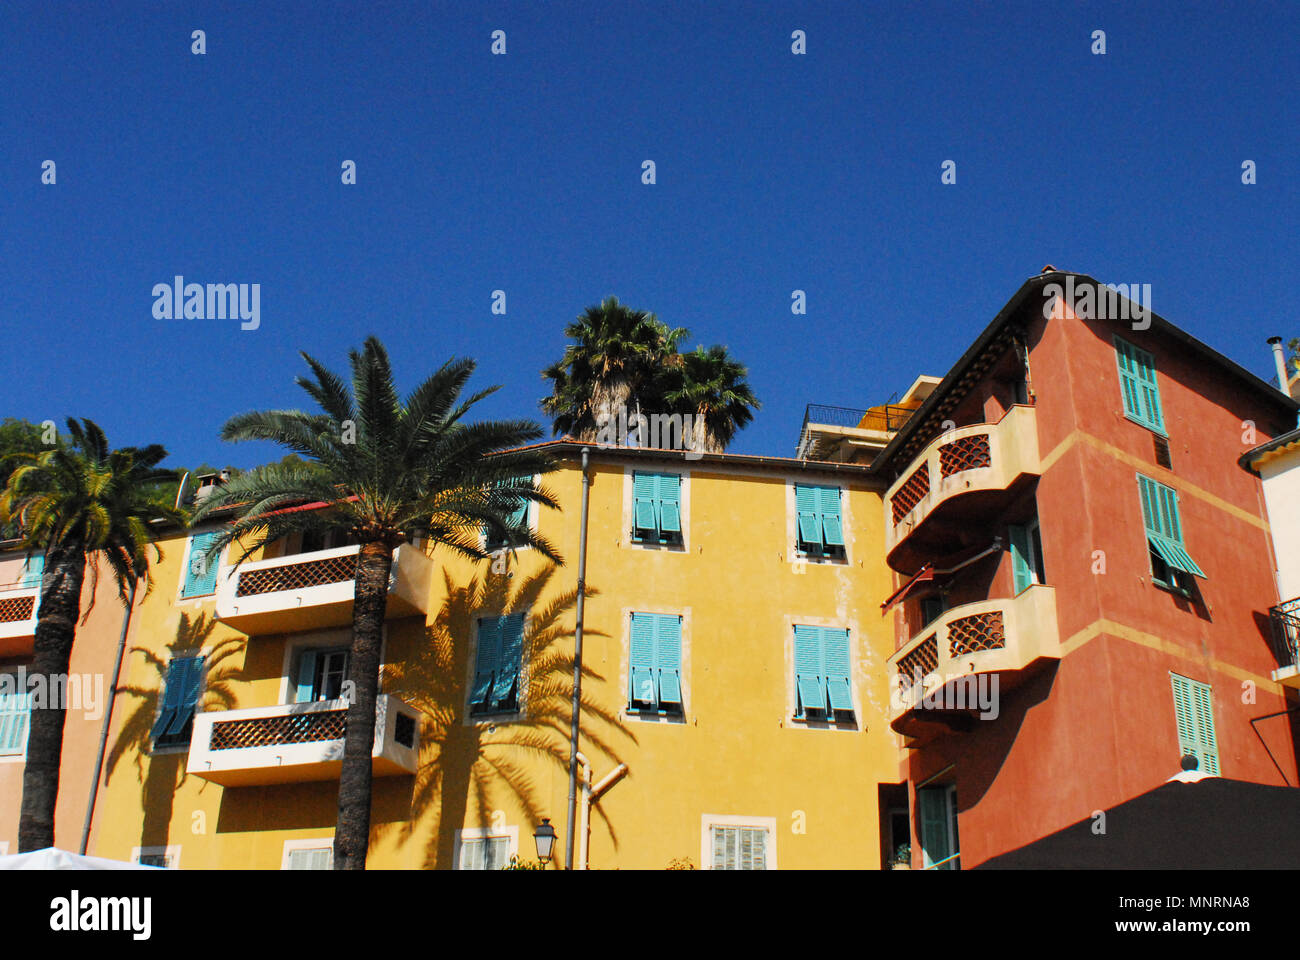 Villefranche-sur-Mer est l'endroit à voir sur la Côte d'Azur en France. Ce sont les immeubles d'appartements colorés sur la rue principale. Banque D'Images